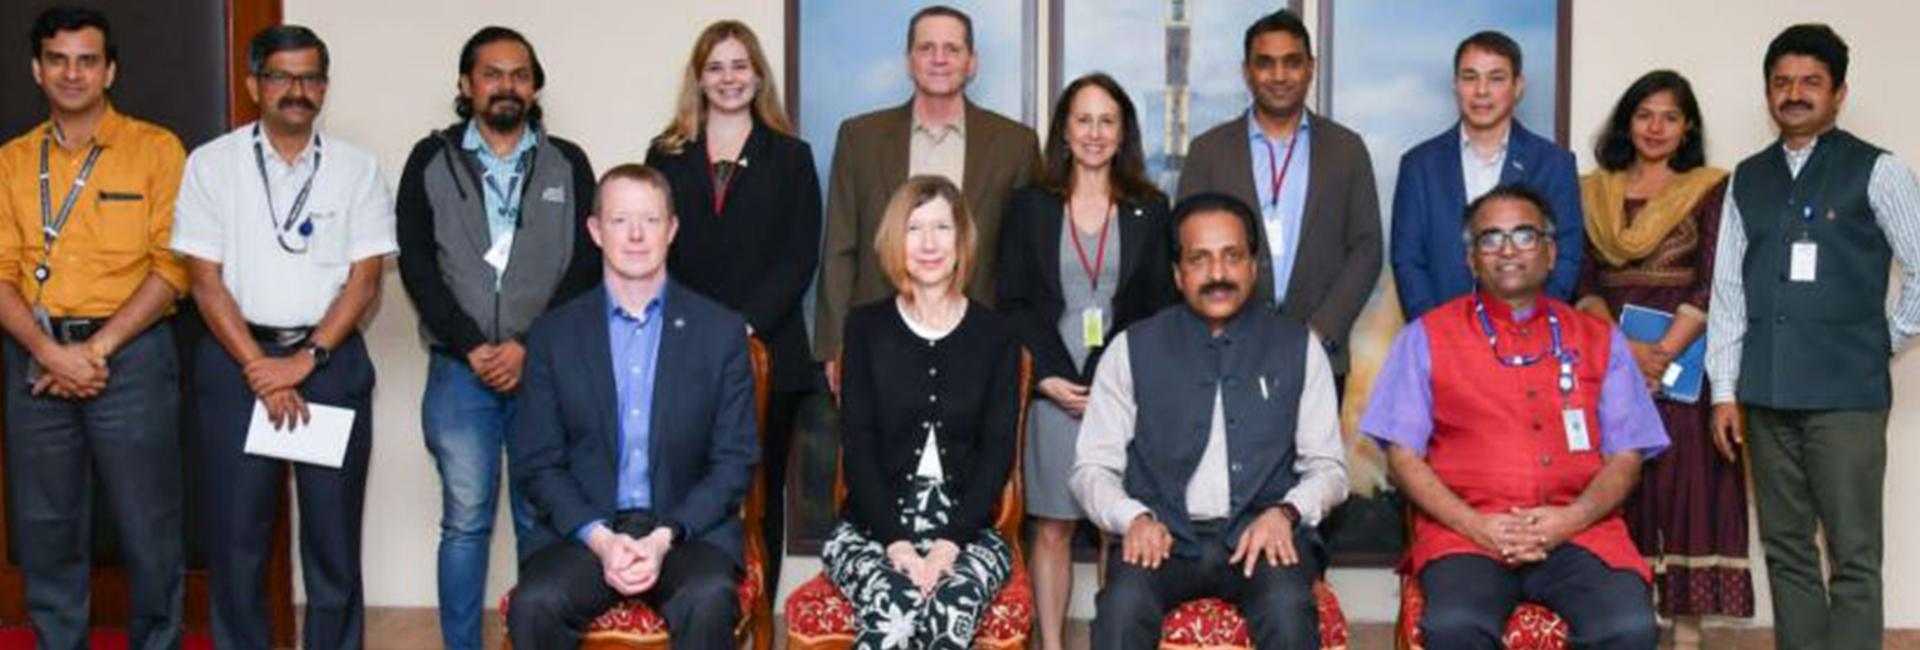 Kathryn Lueders, amministratore associato per la direzione delle missioni spaziali della NASA, era in tournée in India. Ha visitato l'ISRO e ha incontrato il presidente S Somnath, il direttore del volo spaziale umano Dr Umamaheswaran R e altri membri della forza lavoro dell'ISRO.